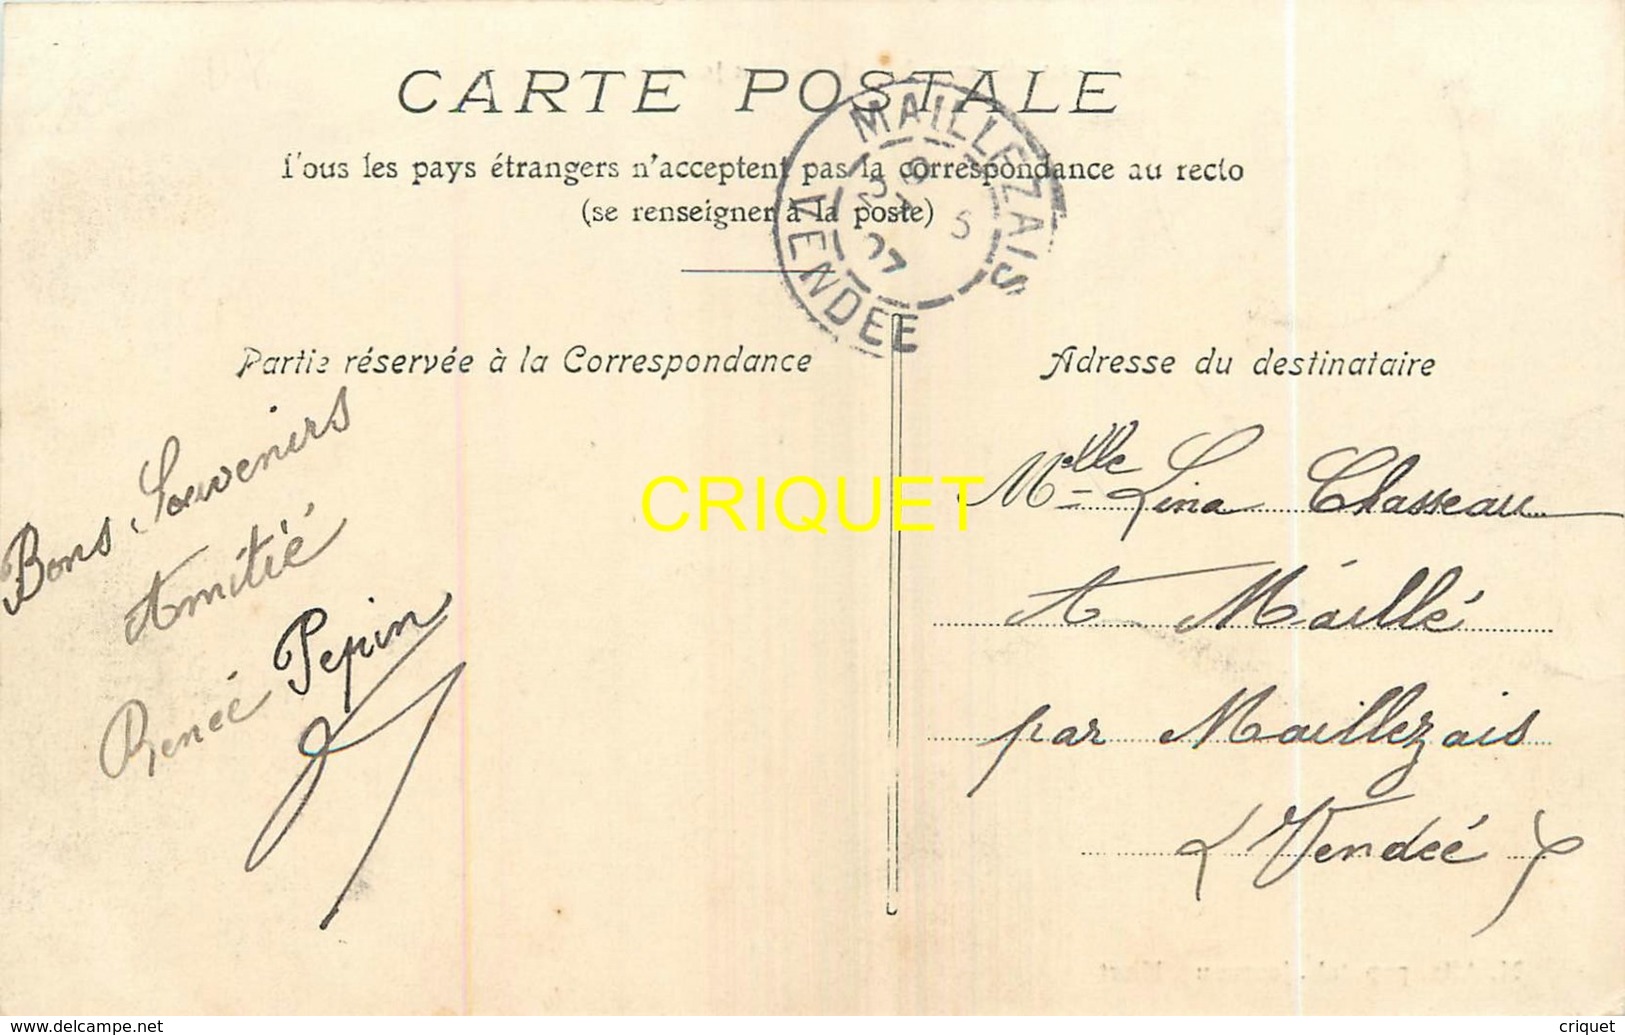 79 Beauvoir Sur Niort, Un Jour De Foire, Très Beau Plan, Gendarme...., Affranchie 1907, Beau Cliché Pas Courant - Beauvoir Sur Niort